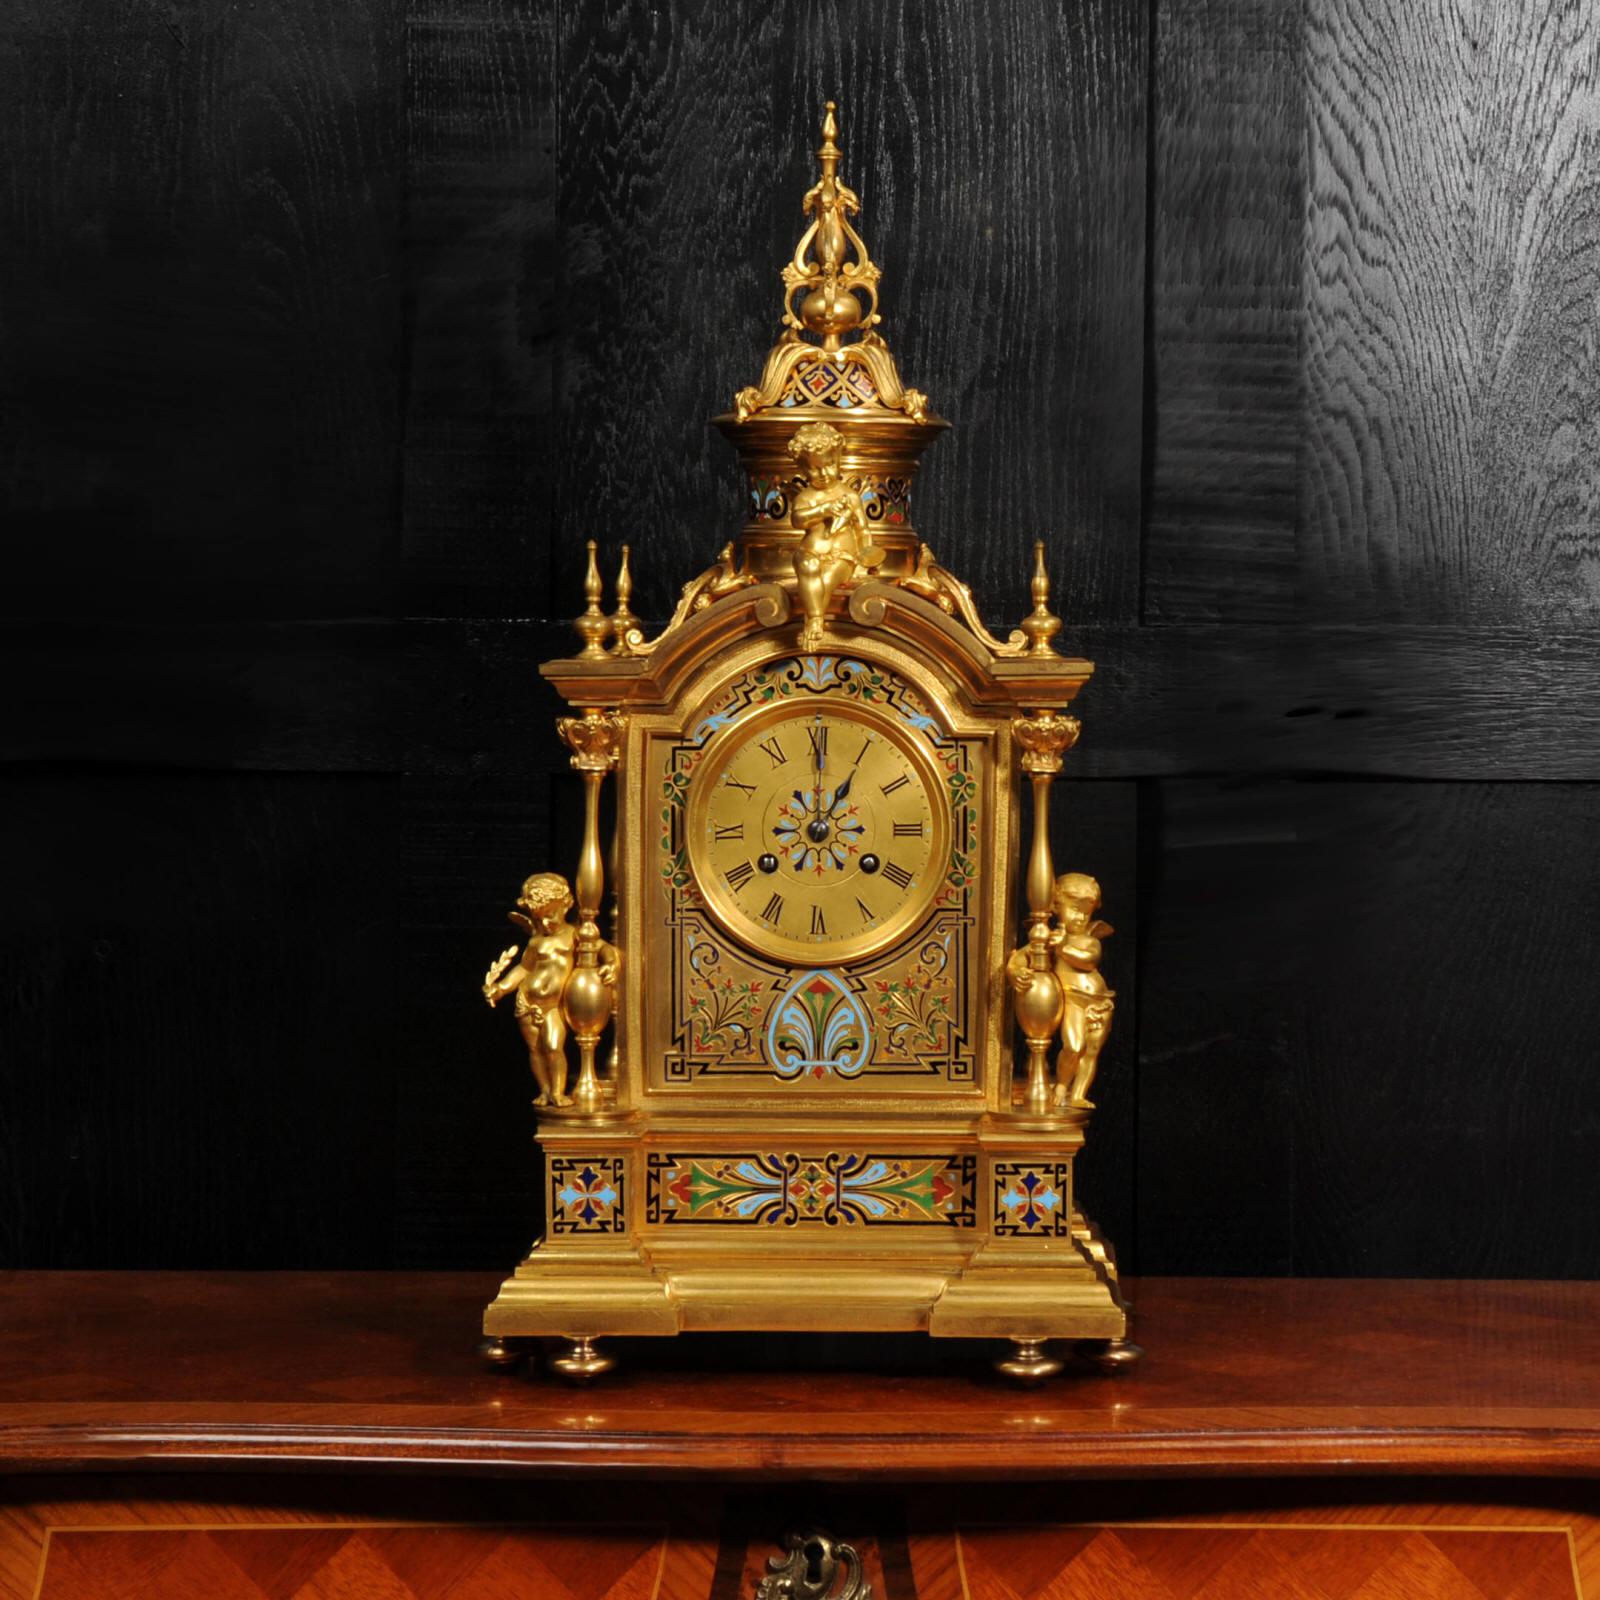 Une magnifique horloge de style Renaissance de la célèbre maison d'horlogerie parisienne Le Roy &Fils. Magnifiquement modelé en bronze finement doré et finement décoré d'un exquis émail champlevé polychrome. La caisse est formée d'un fronton arqué